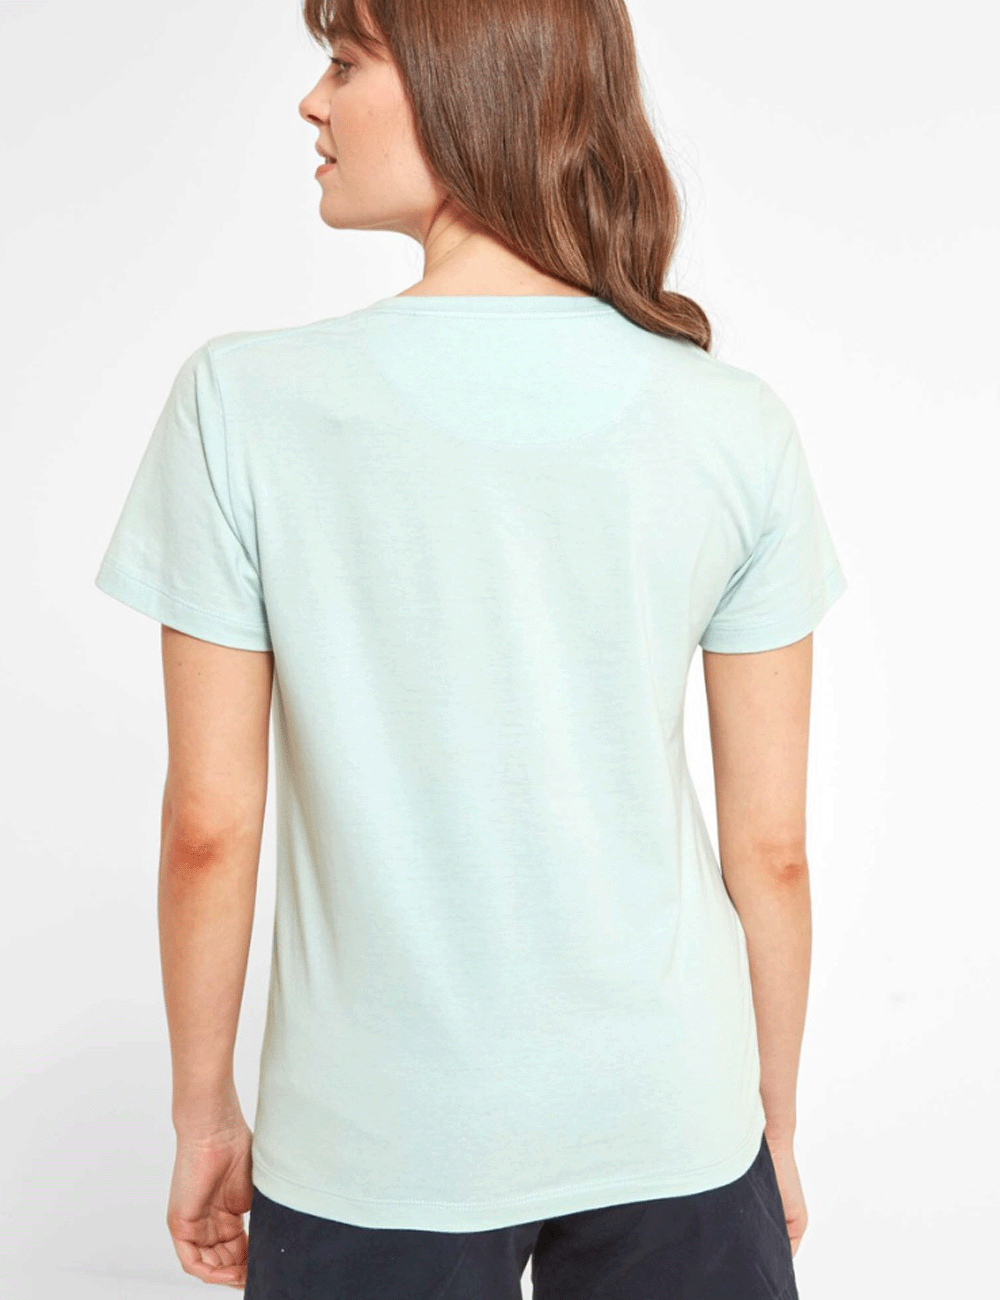 Woman facing away wearing the Tresco T-Shirt